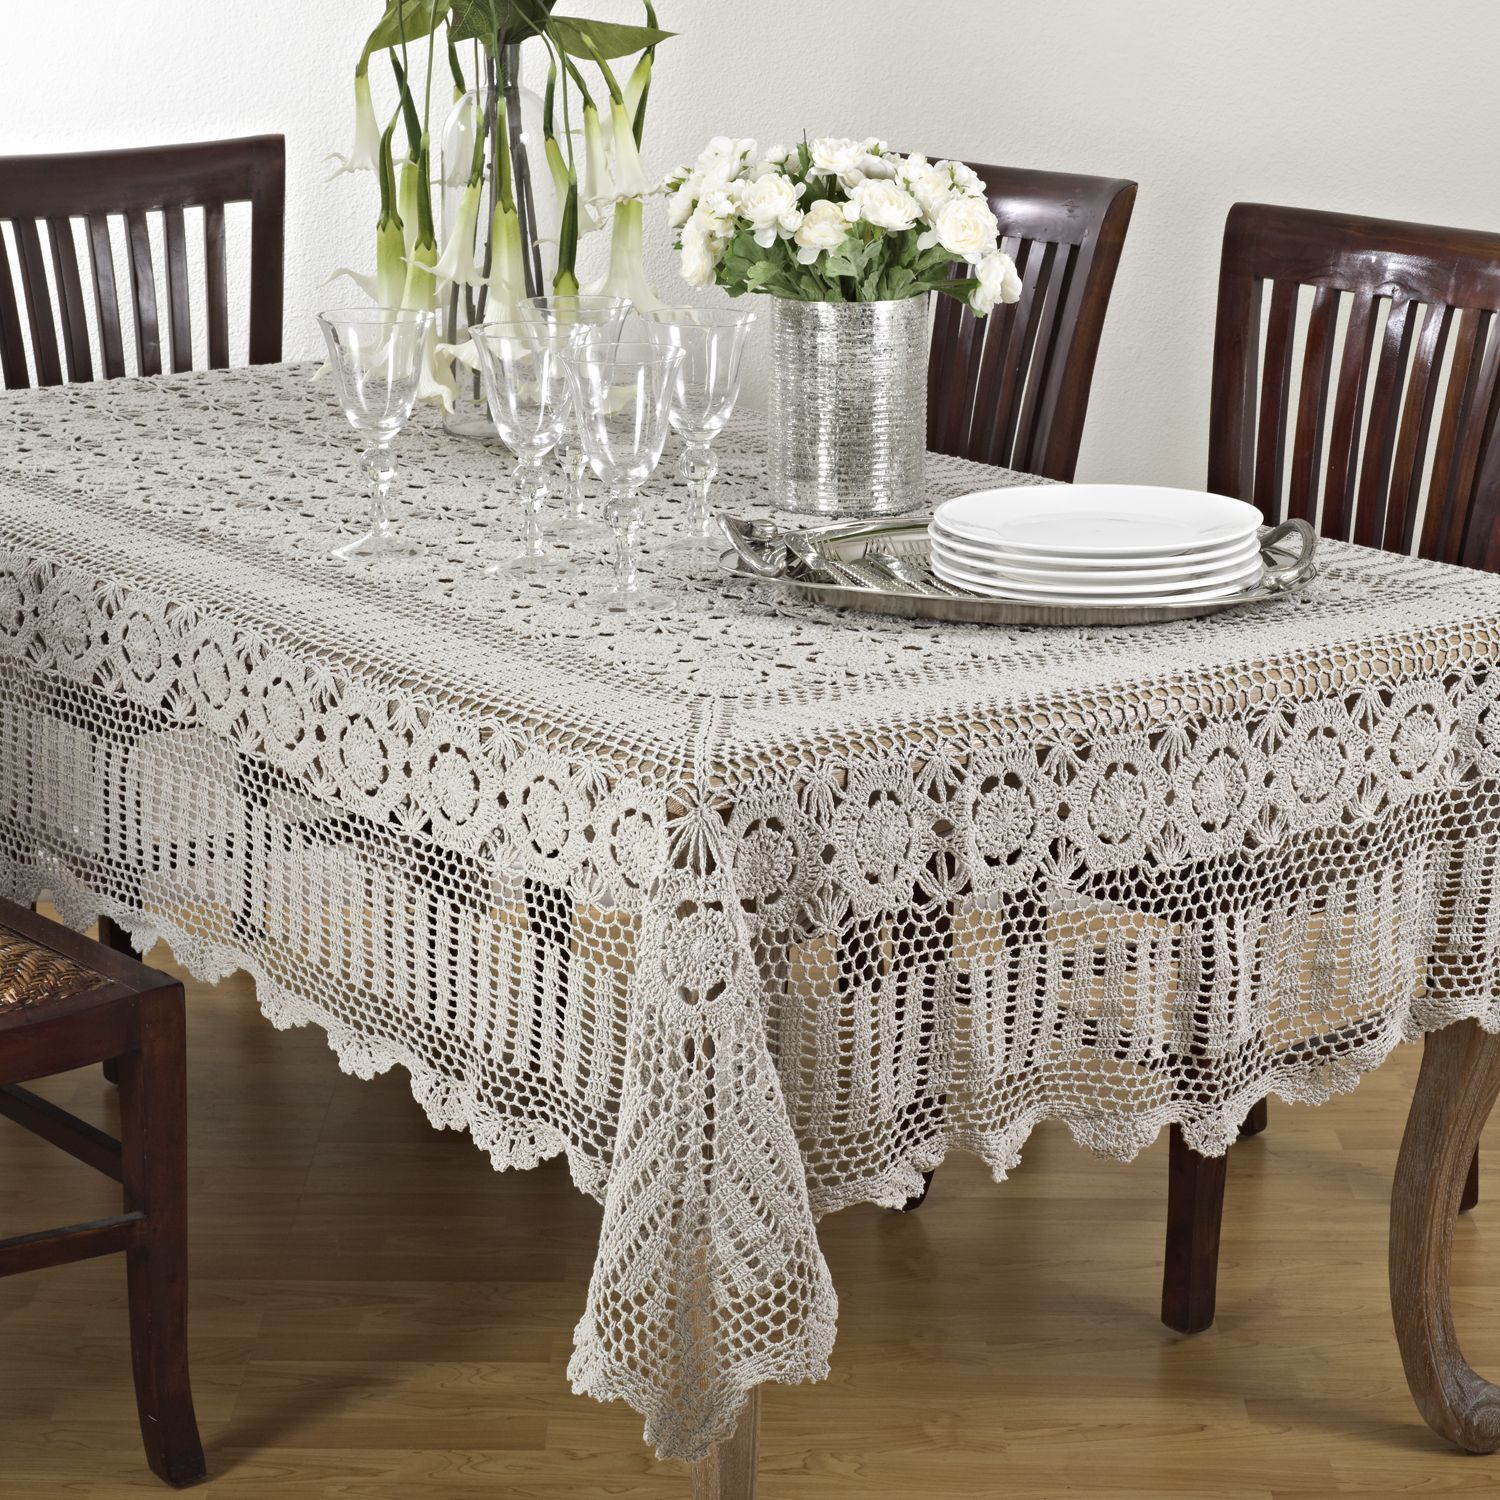 crocheted tablecloth ideas